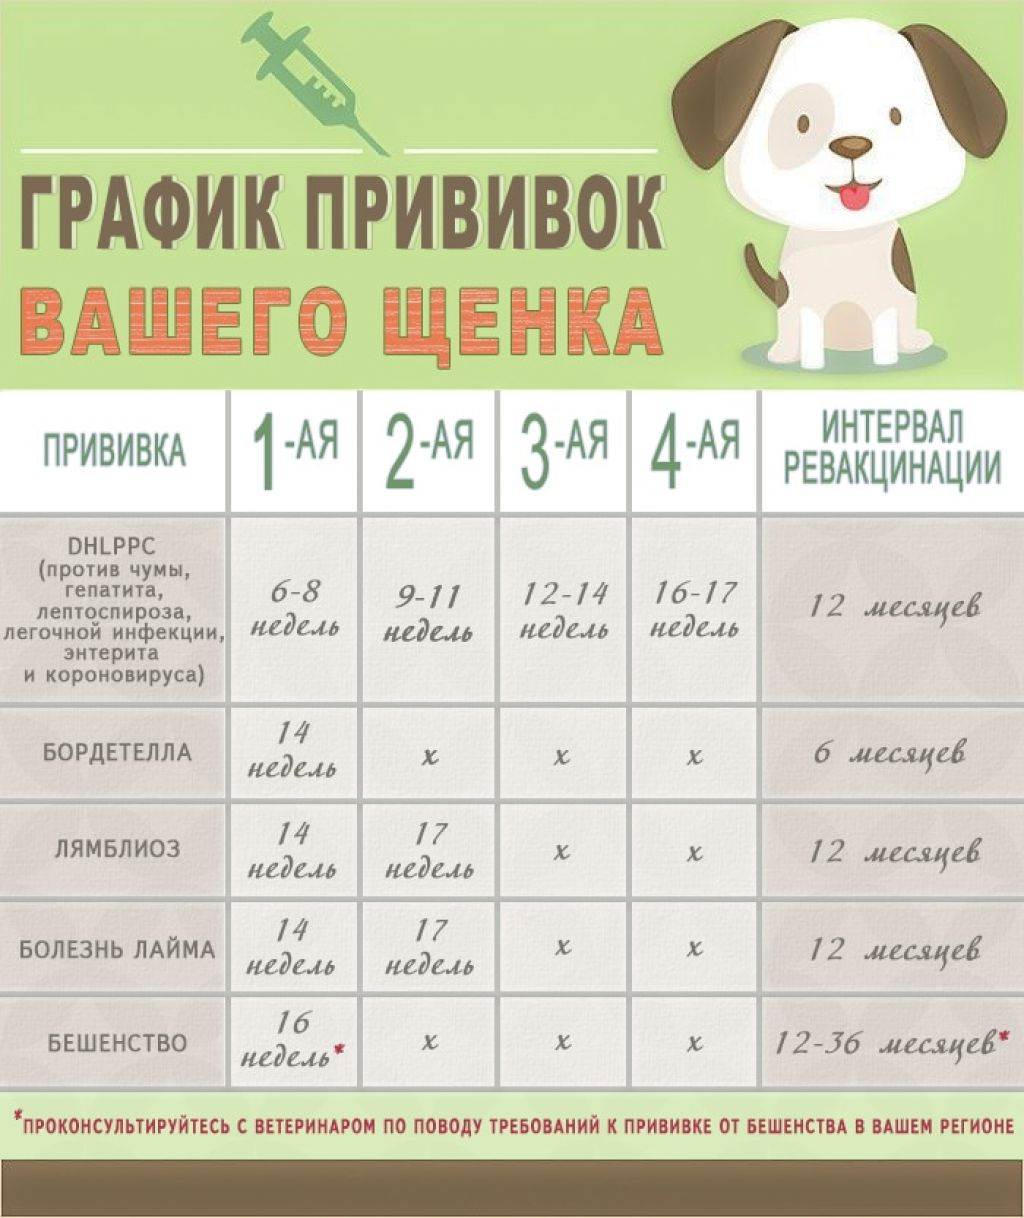 Прививки щенкам и взрослым собакам: таблица прививок собакам по возрасту, первая прививка щенку, последующие прививки до года